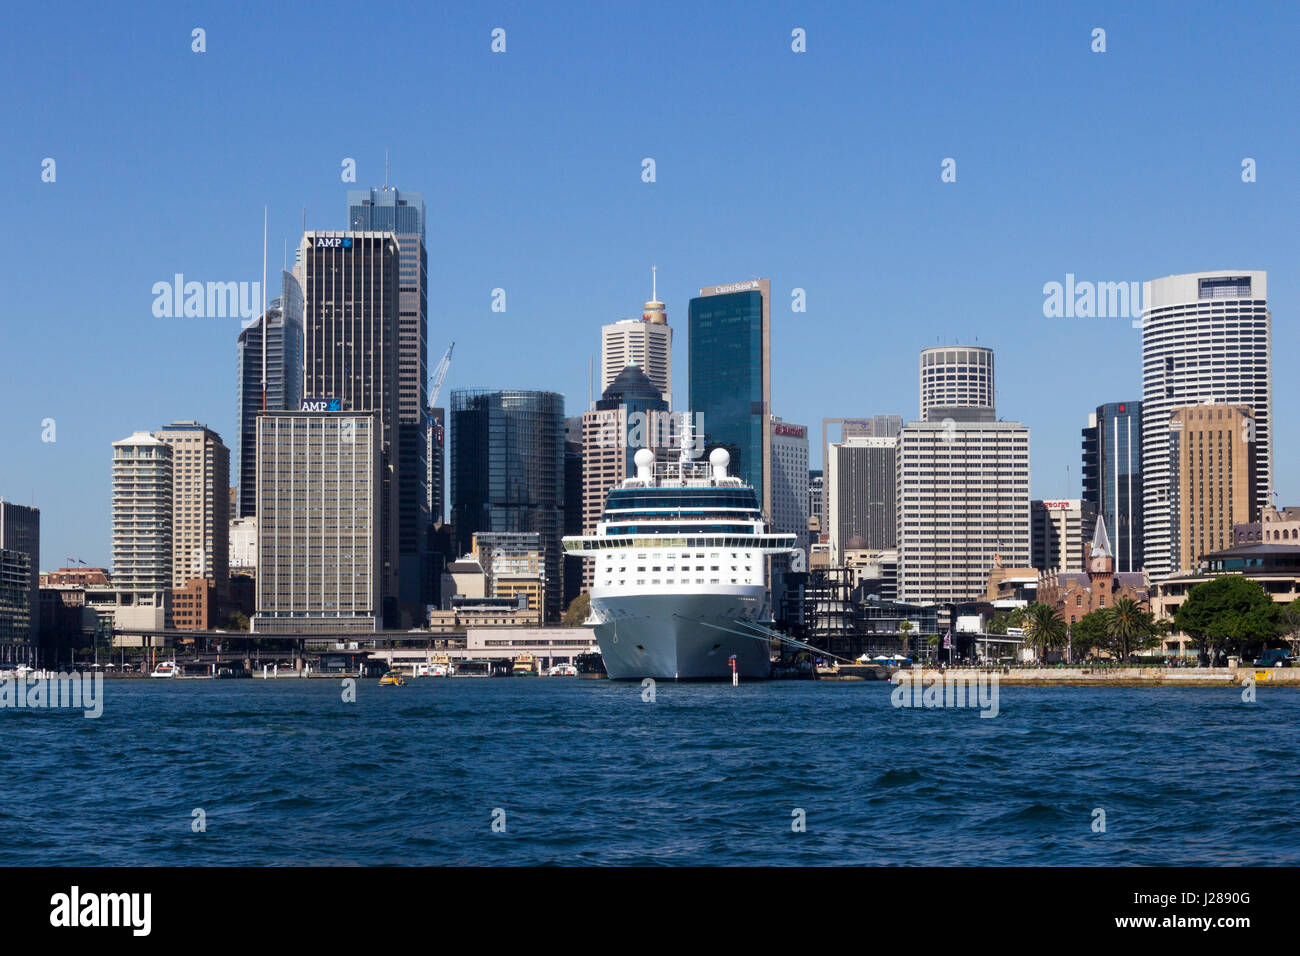 Kreuzfahrtschiff vor Anker im Hafen von Sydney mit dem Central Business District hinter, New-South.Wales, Australien Stockfoto